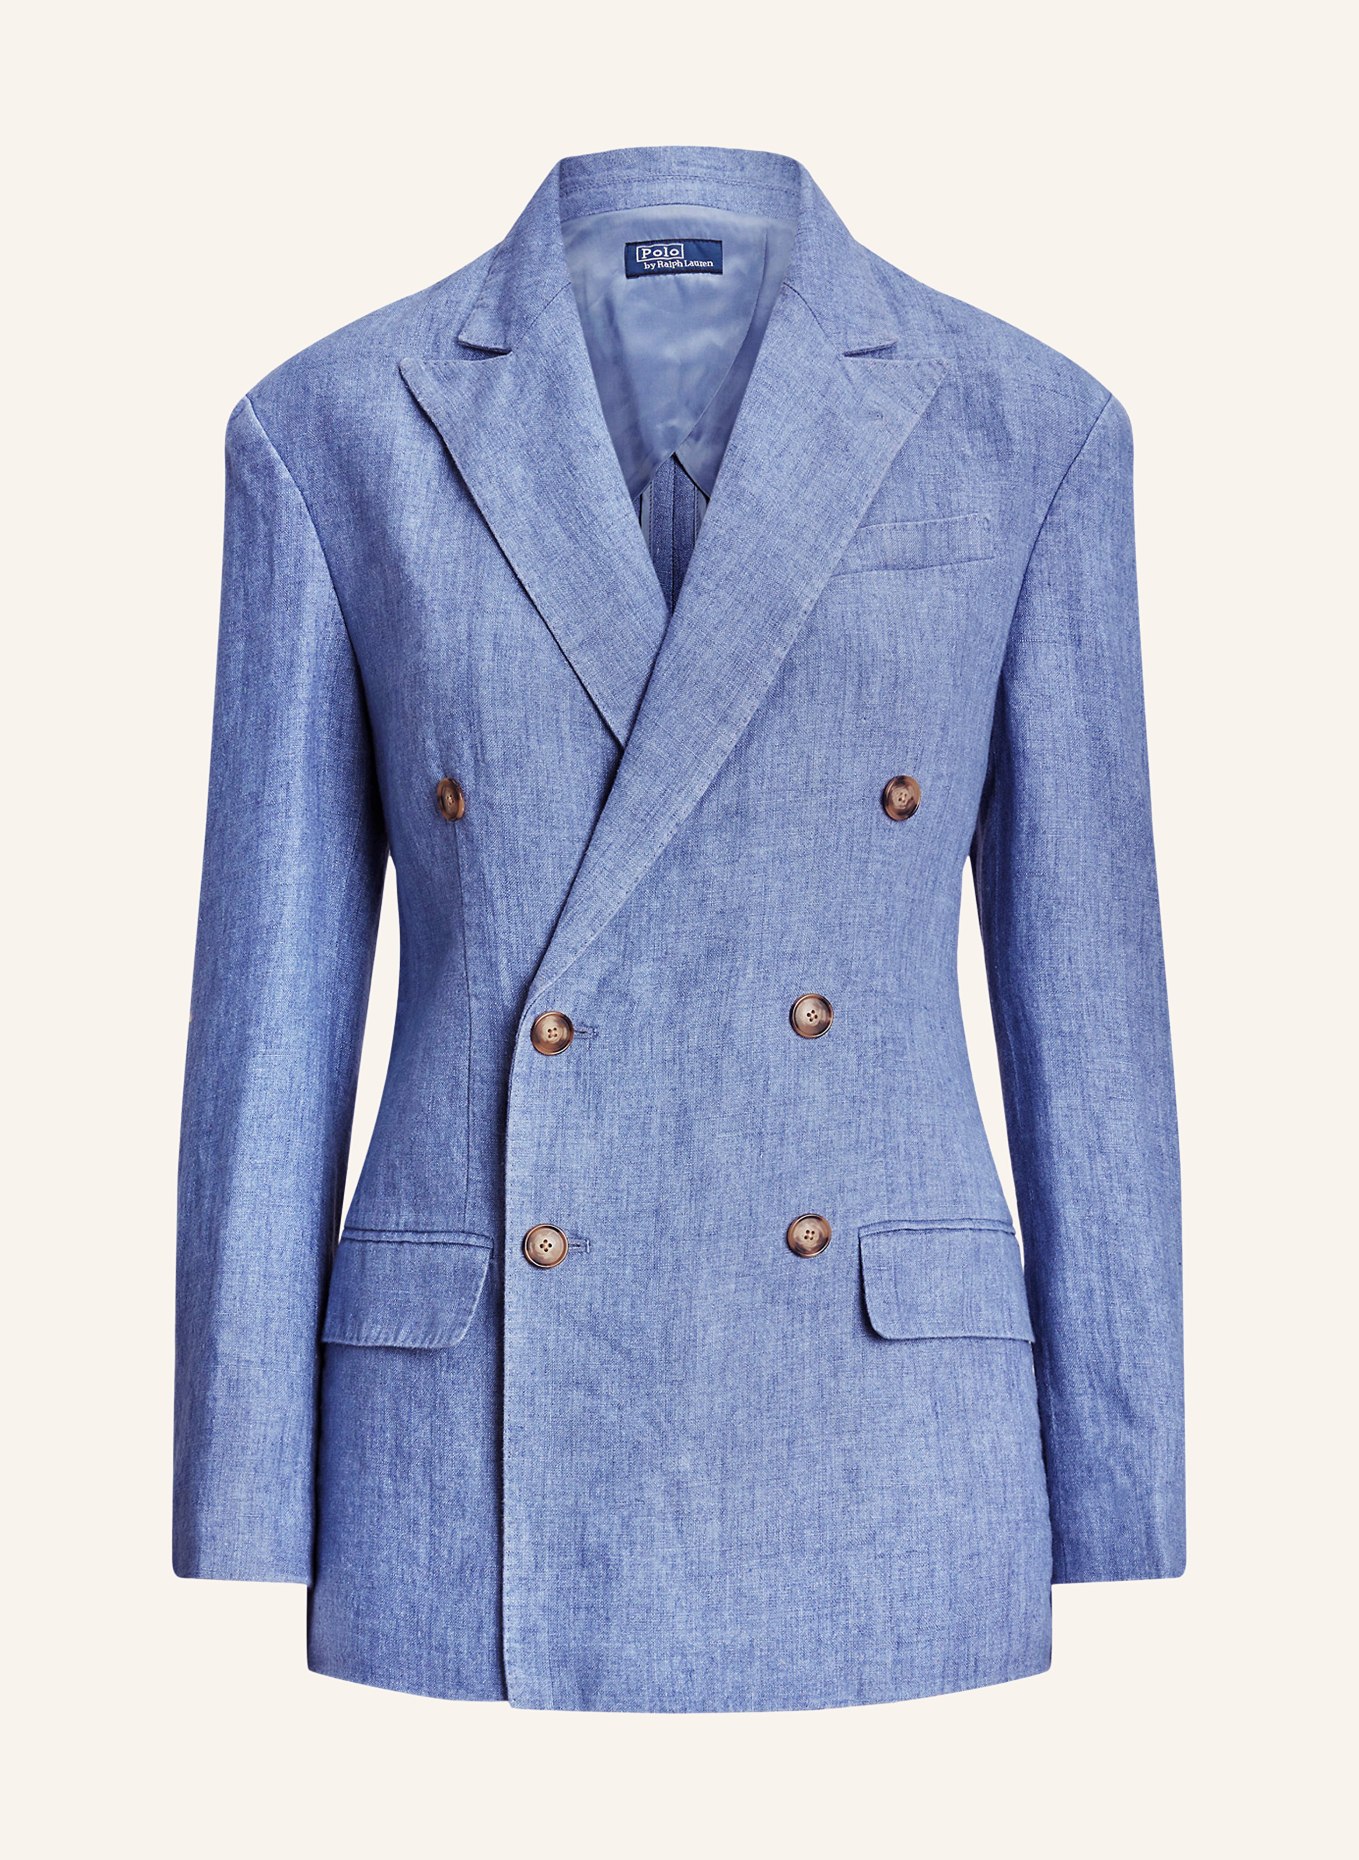 POLO RALPH LAUREN Linen blazer, Color: BLUE (Image 1)